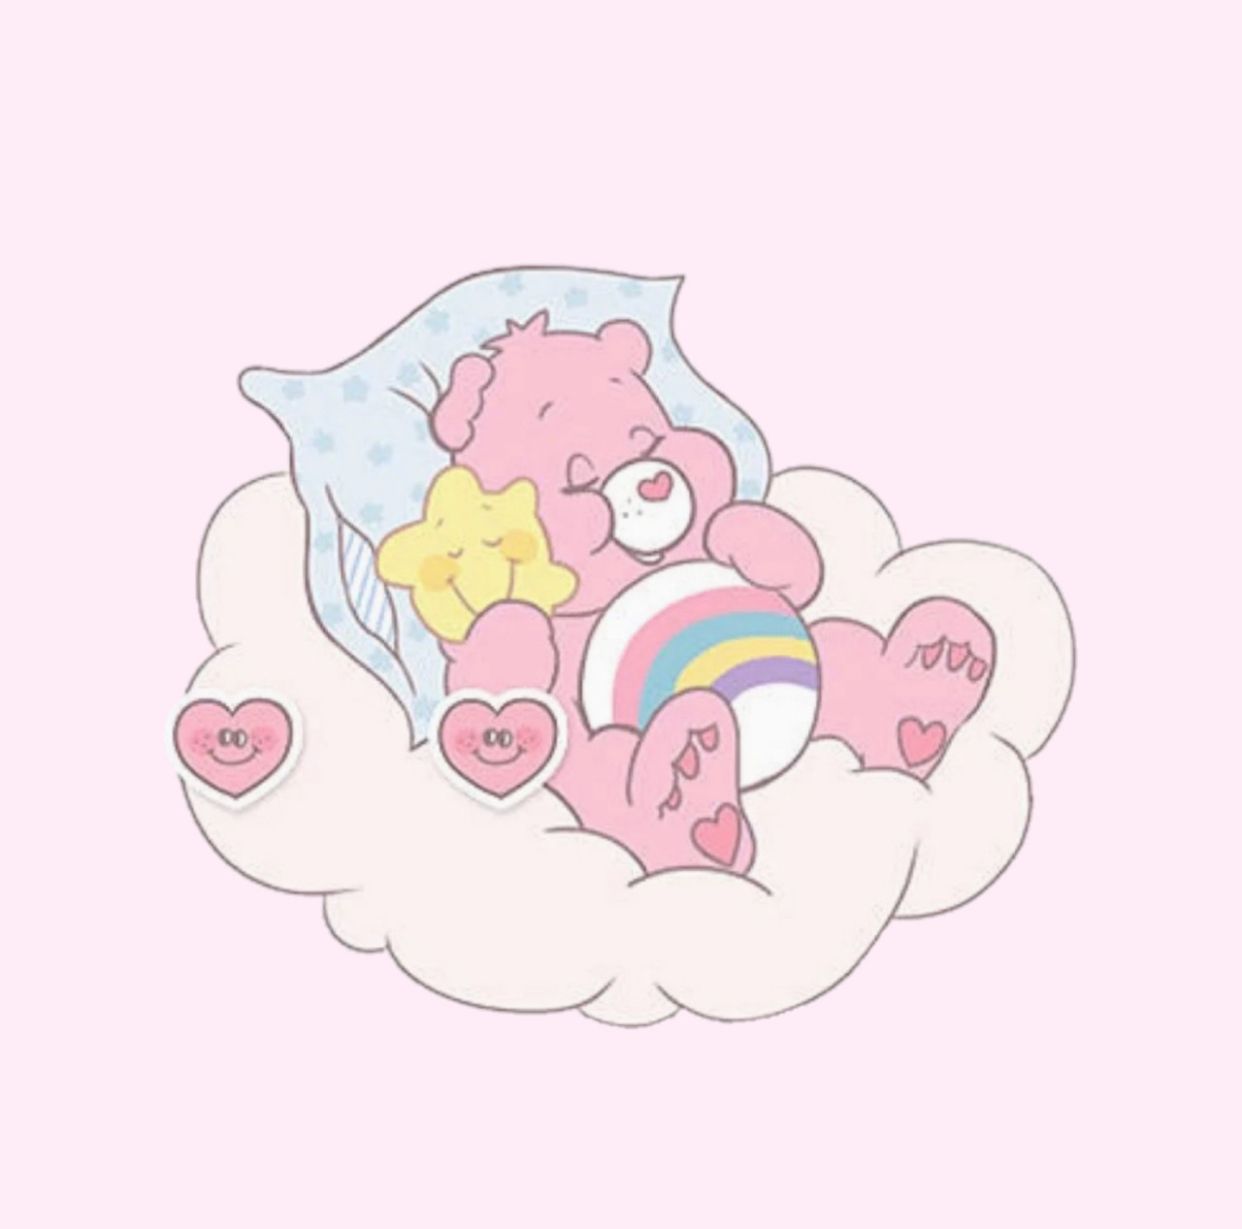 Care bear sleeping on a cloud - Care Bears